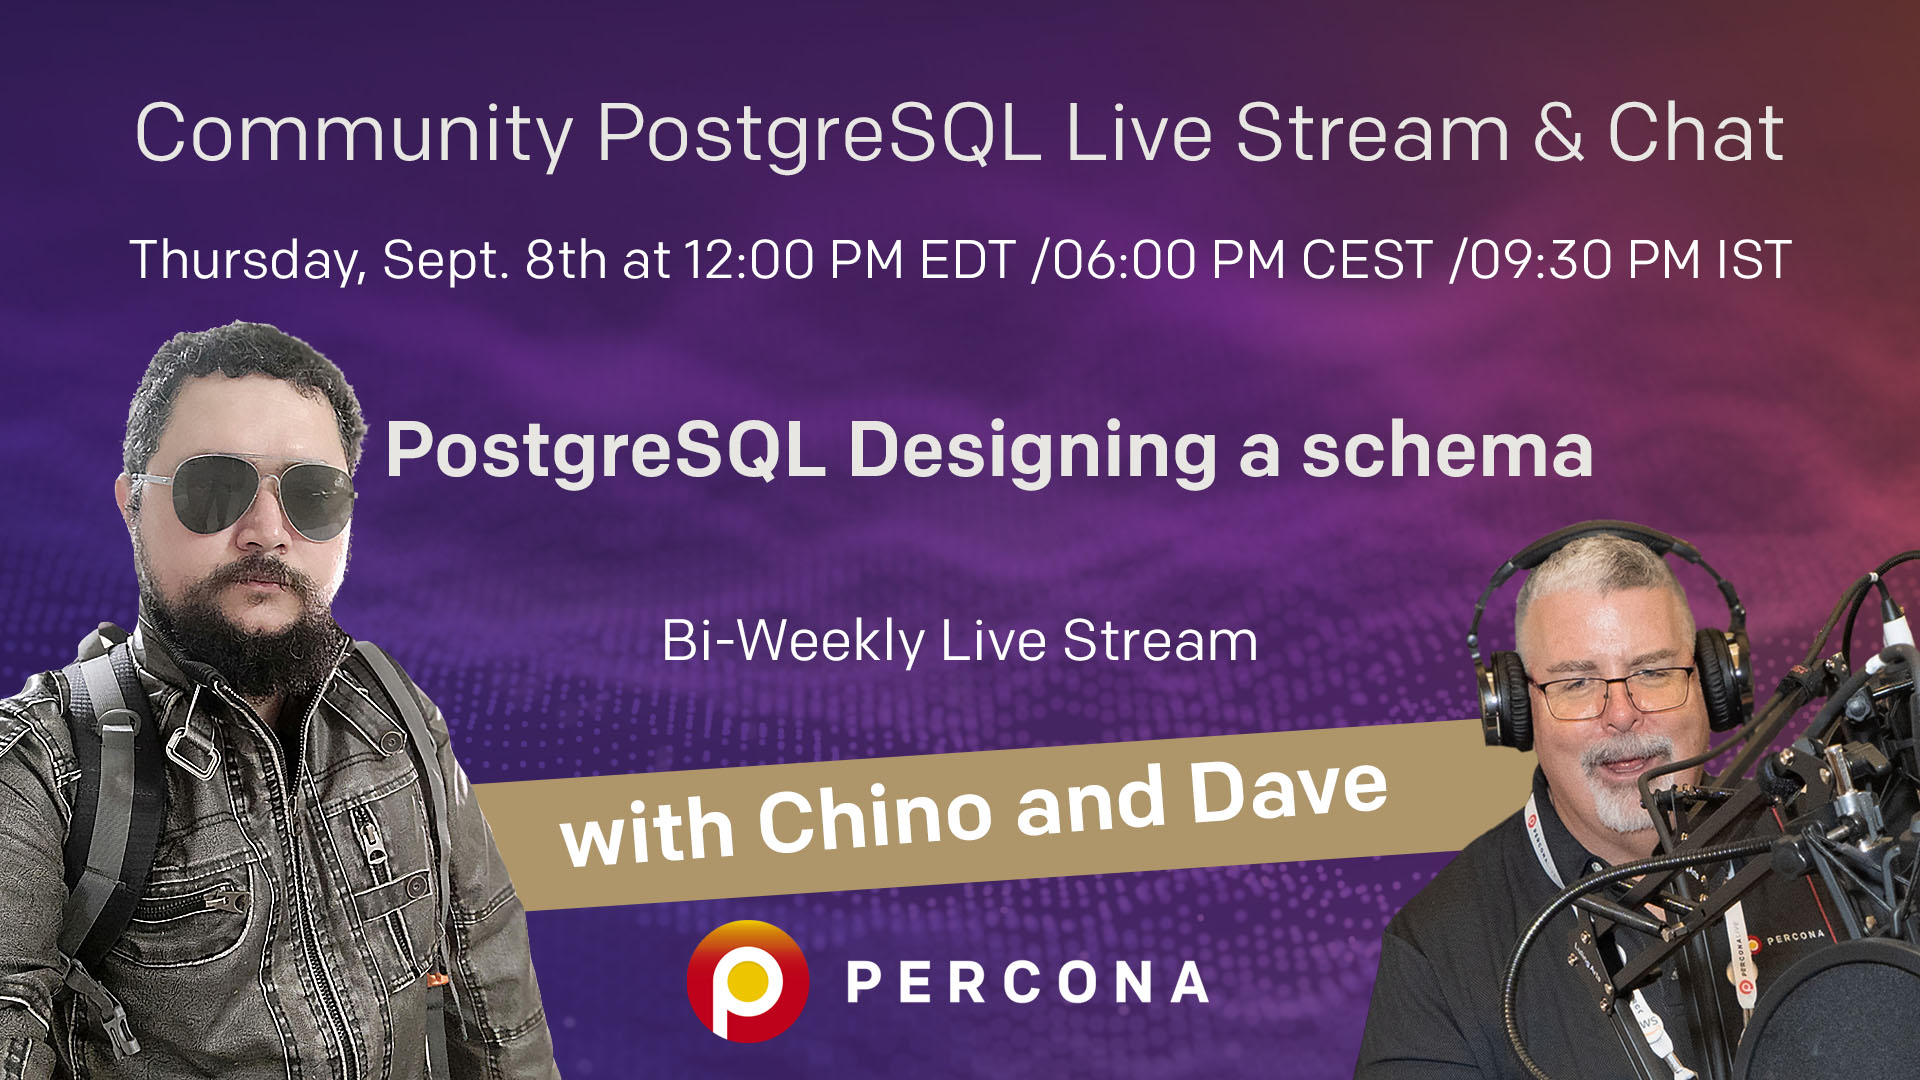 Percona Community PostgreSQL Live Stream & Chat - Sept 8th